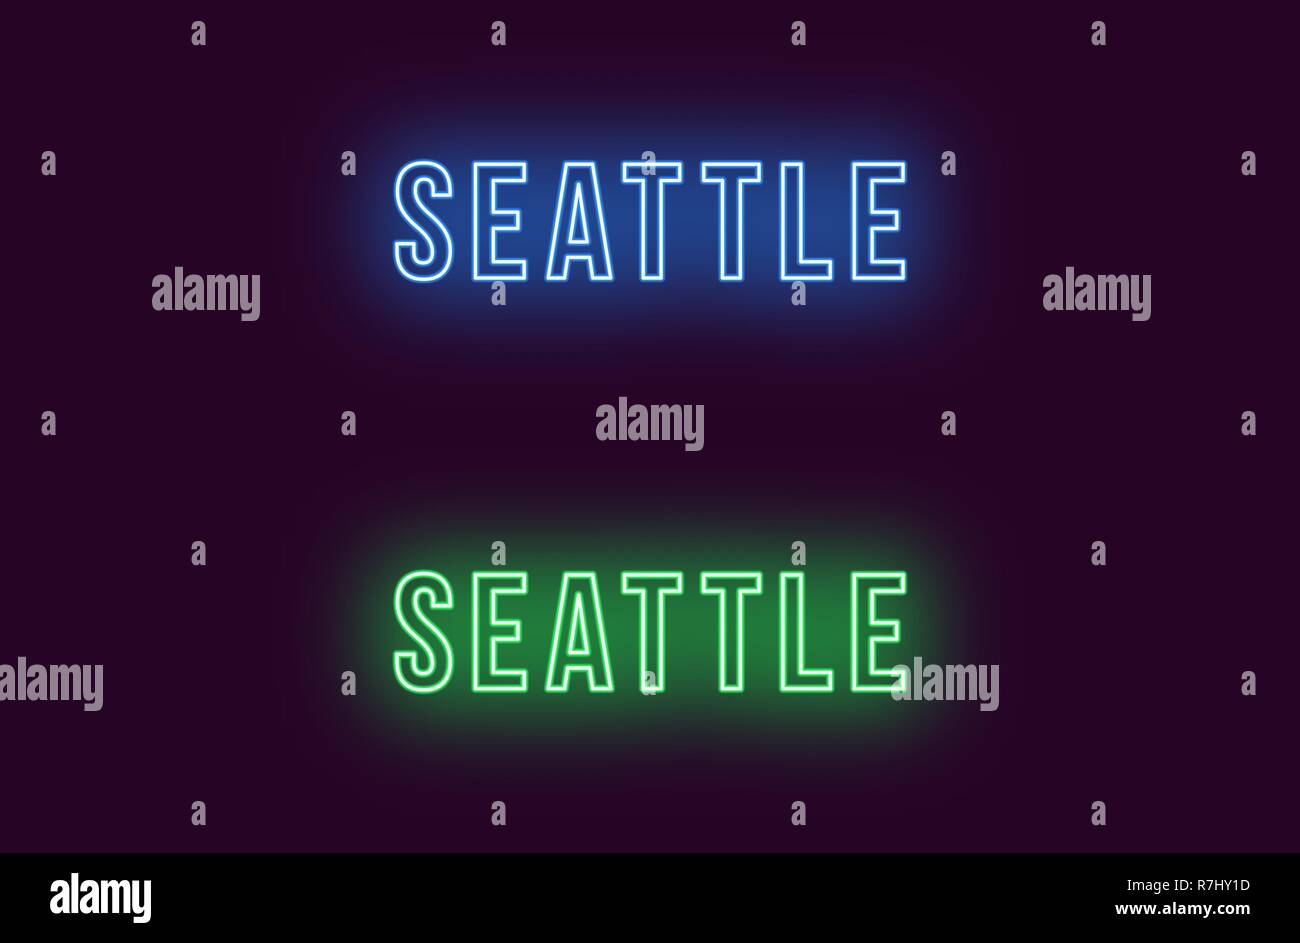 Neon Name des Seattle City in den USA. Vektor Text von Seattle, Neon Beschriftung mit Hintergrundbeleuchtung Fett Stil, blauen und grünen Farben. Isolierte glühende Titel Stock Vektor